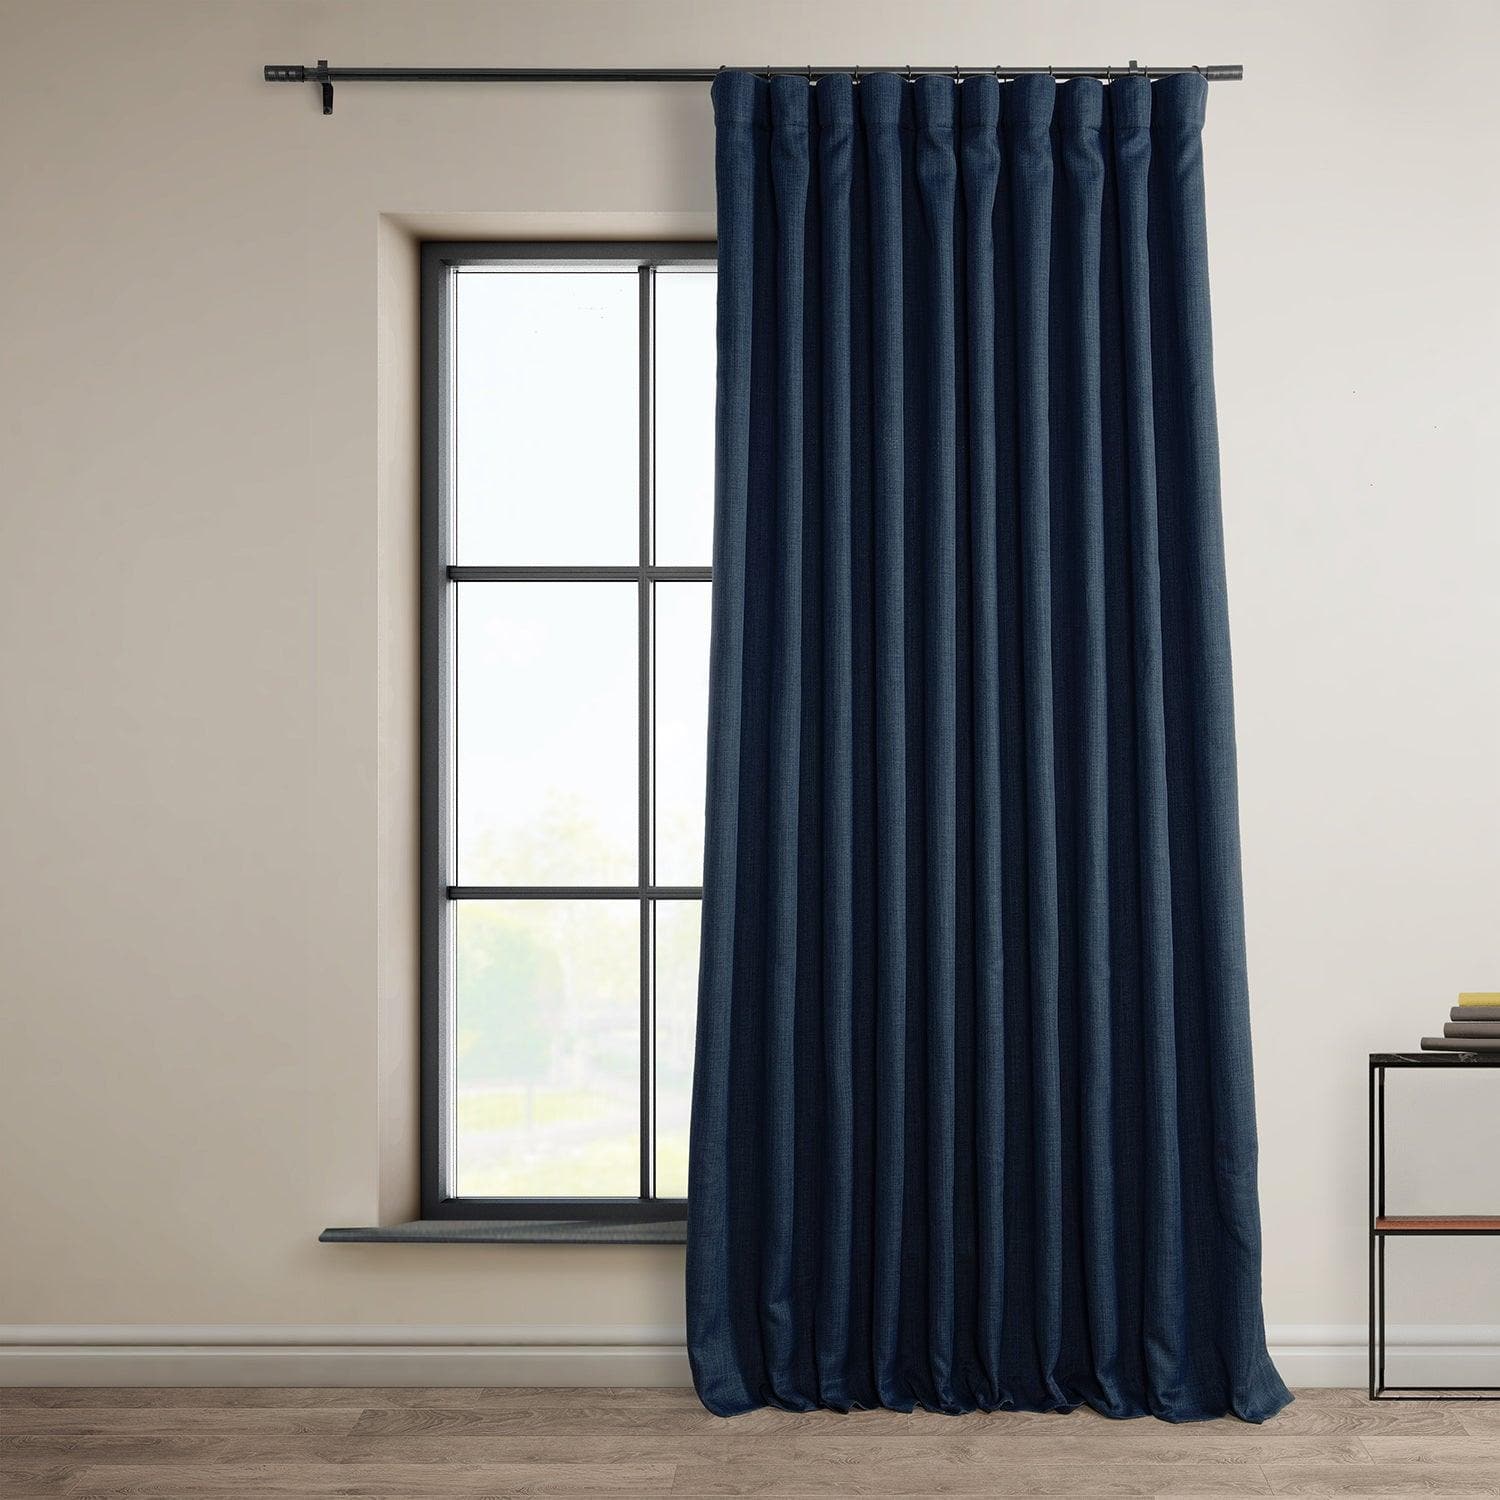 Indigo Extra Wide Textured Faux Linen Room Darkening Curtain